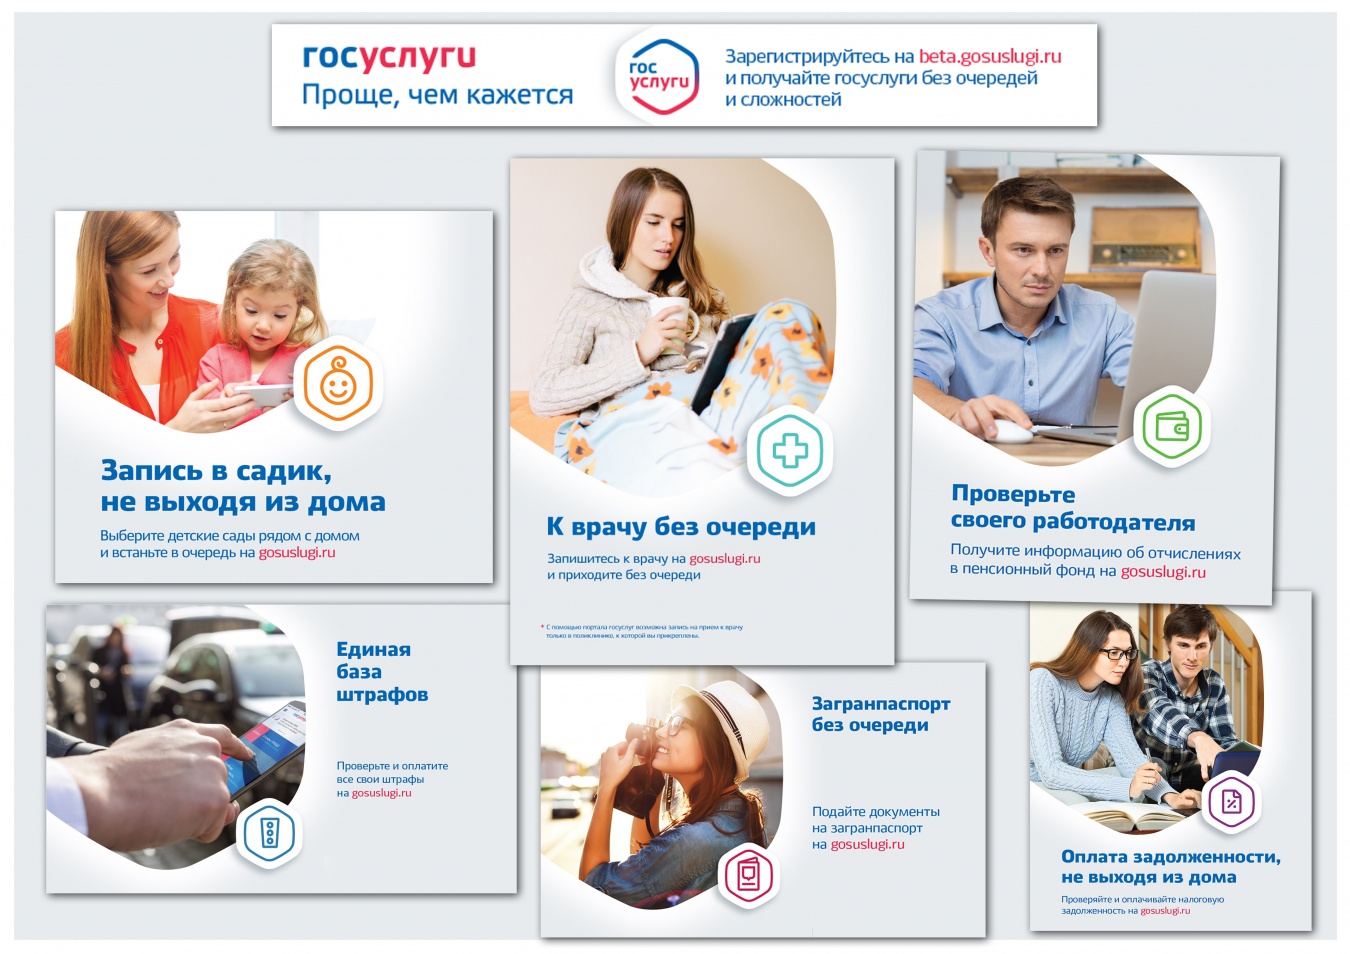 Обращение через интернет-портал www.gosuslugi.ru - самый удобный способ получения государственных услуг